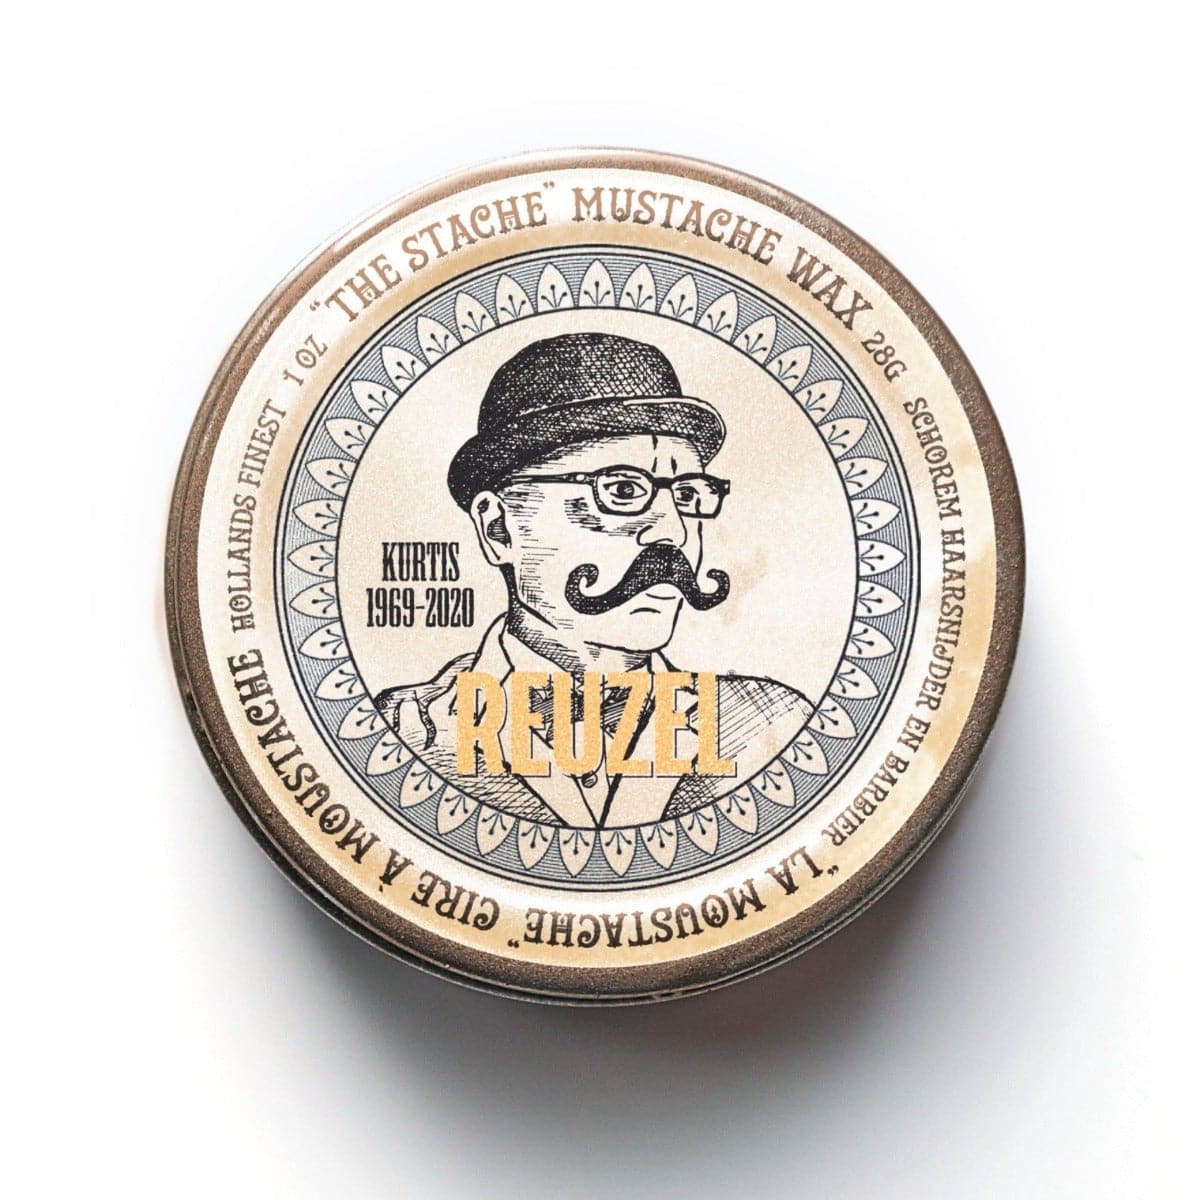 Reuzel - The Stache Moustache Wax 28g